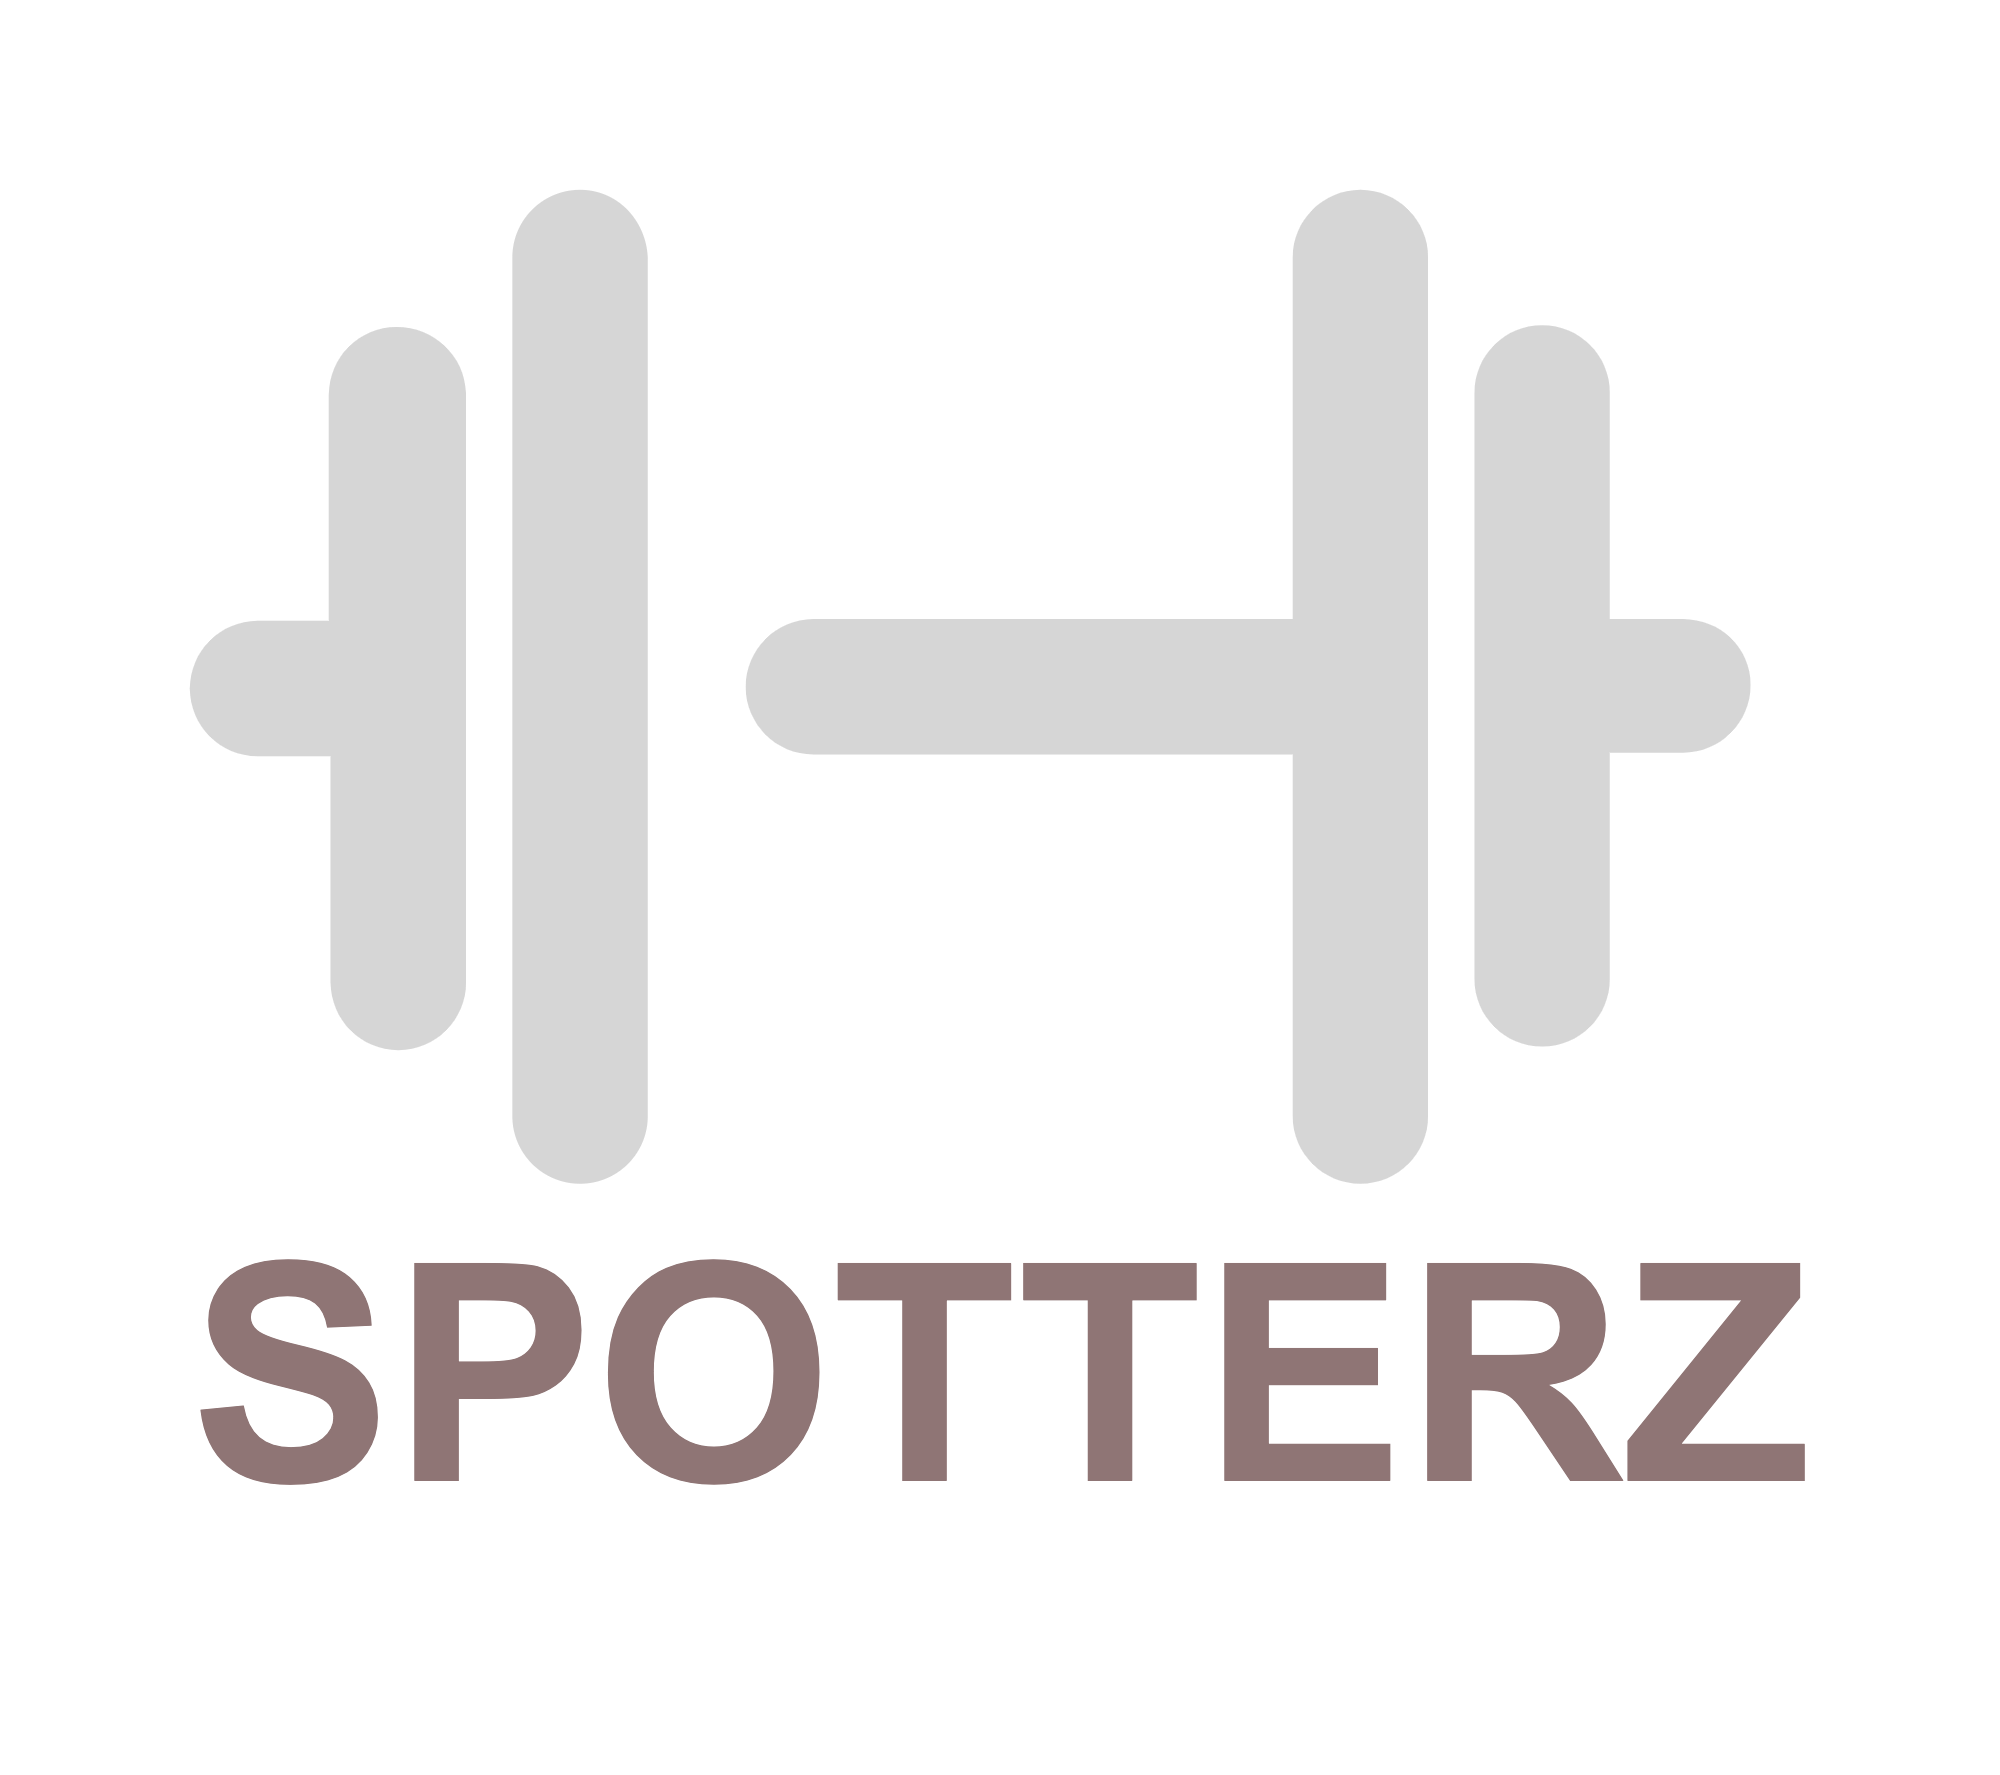 Spotterz